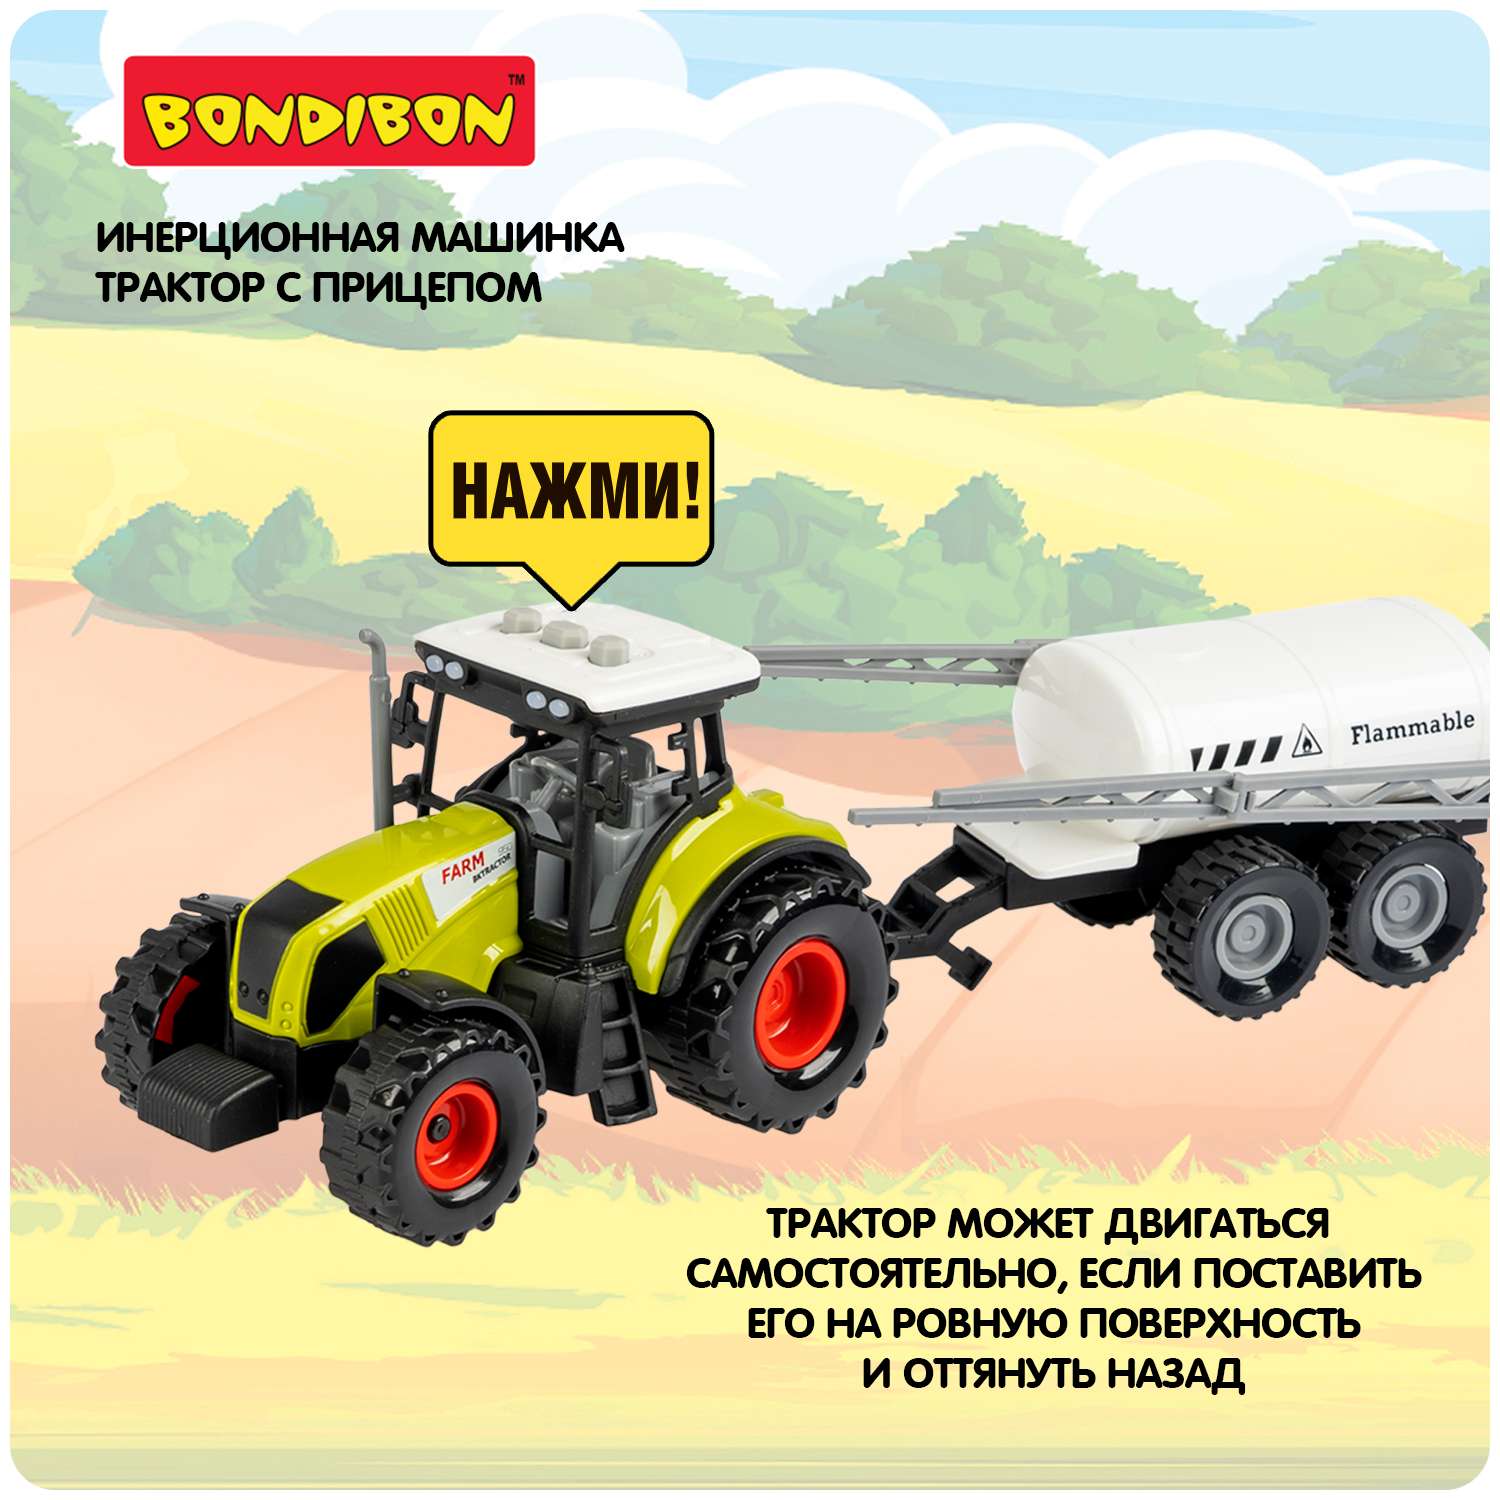 Инерционная машина BONDIBON Ферма трактор с прицепом цистерной со свето-звуковыми эффектами белого цвета ВВ5946 - фото 7